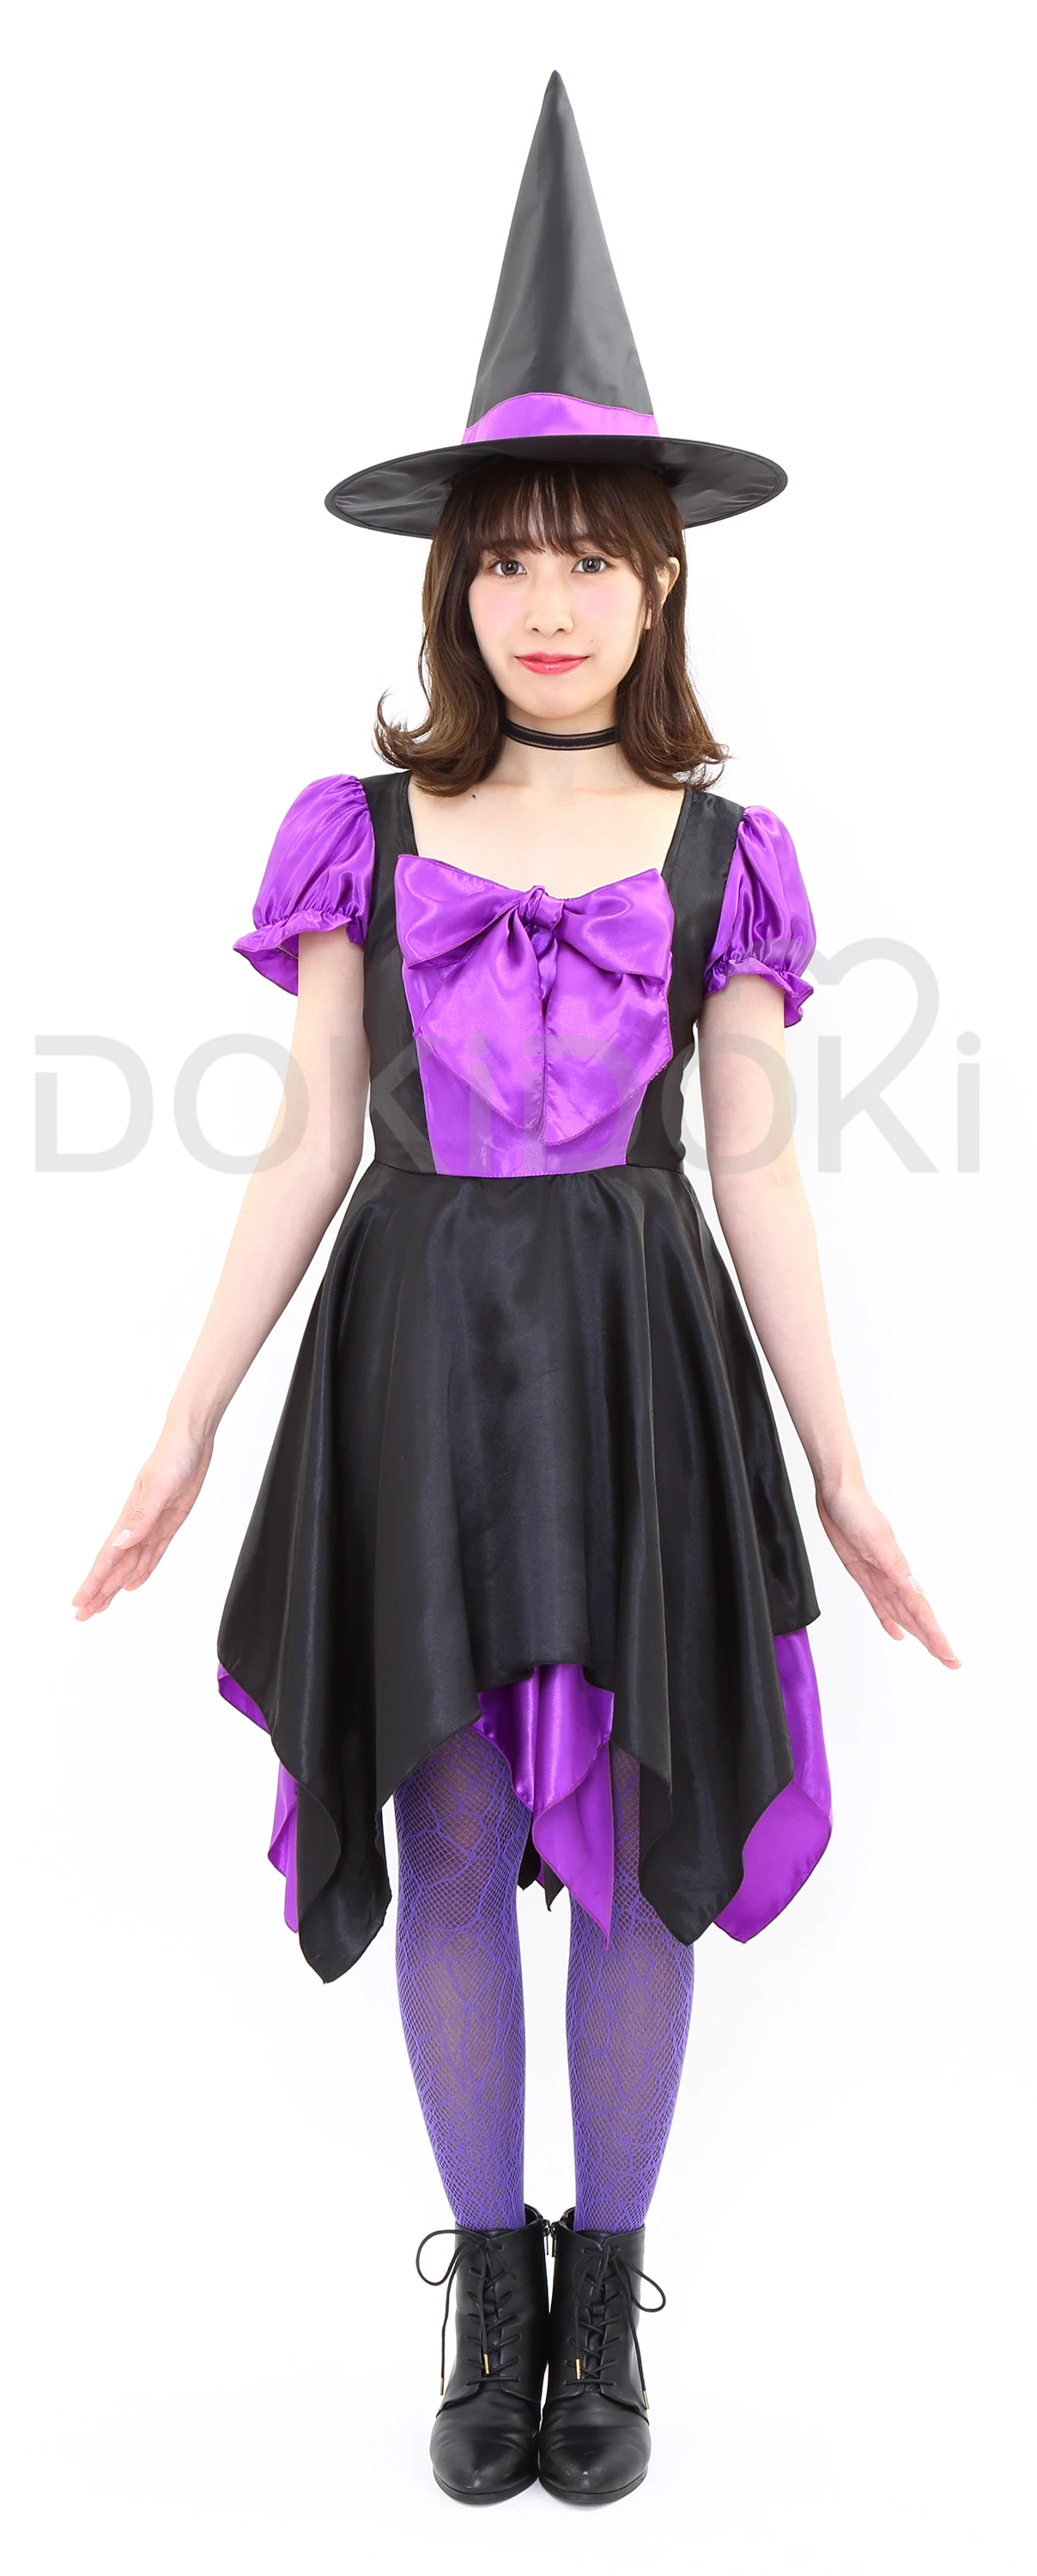 DokiDoki Хэллоуин Косплей Костюм женский милый фиолетовый ведьма платье Хэллоуин косплей Женский костюм платье ведьмы